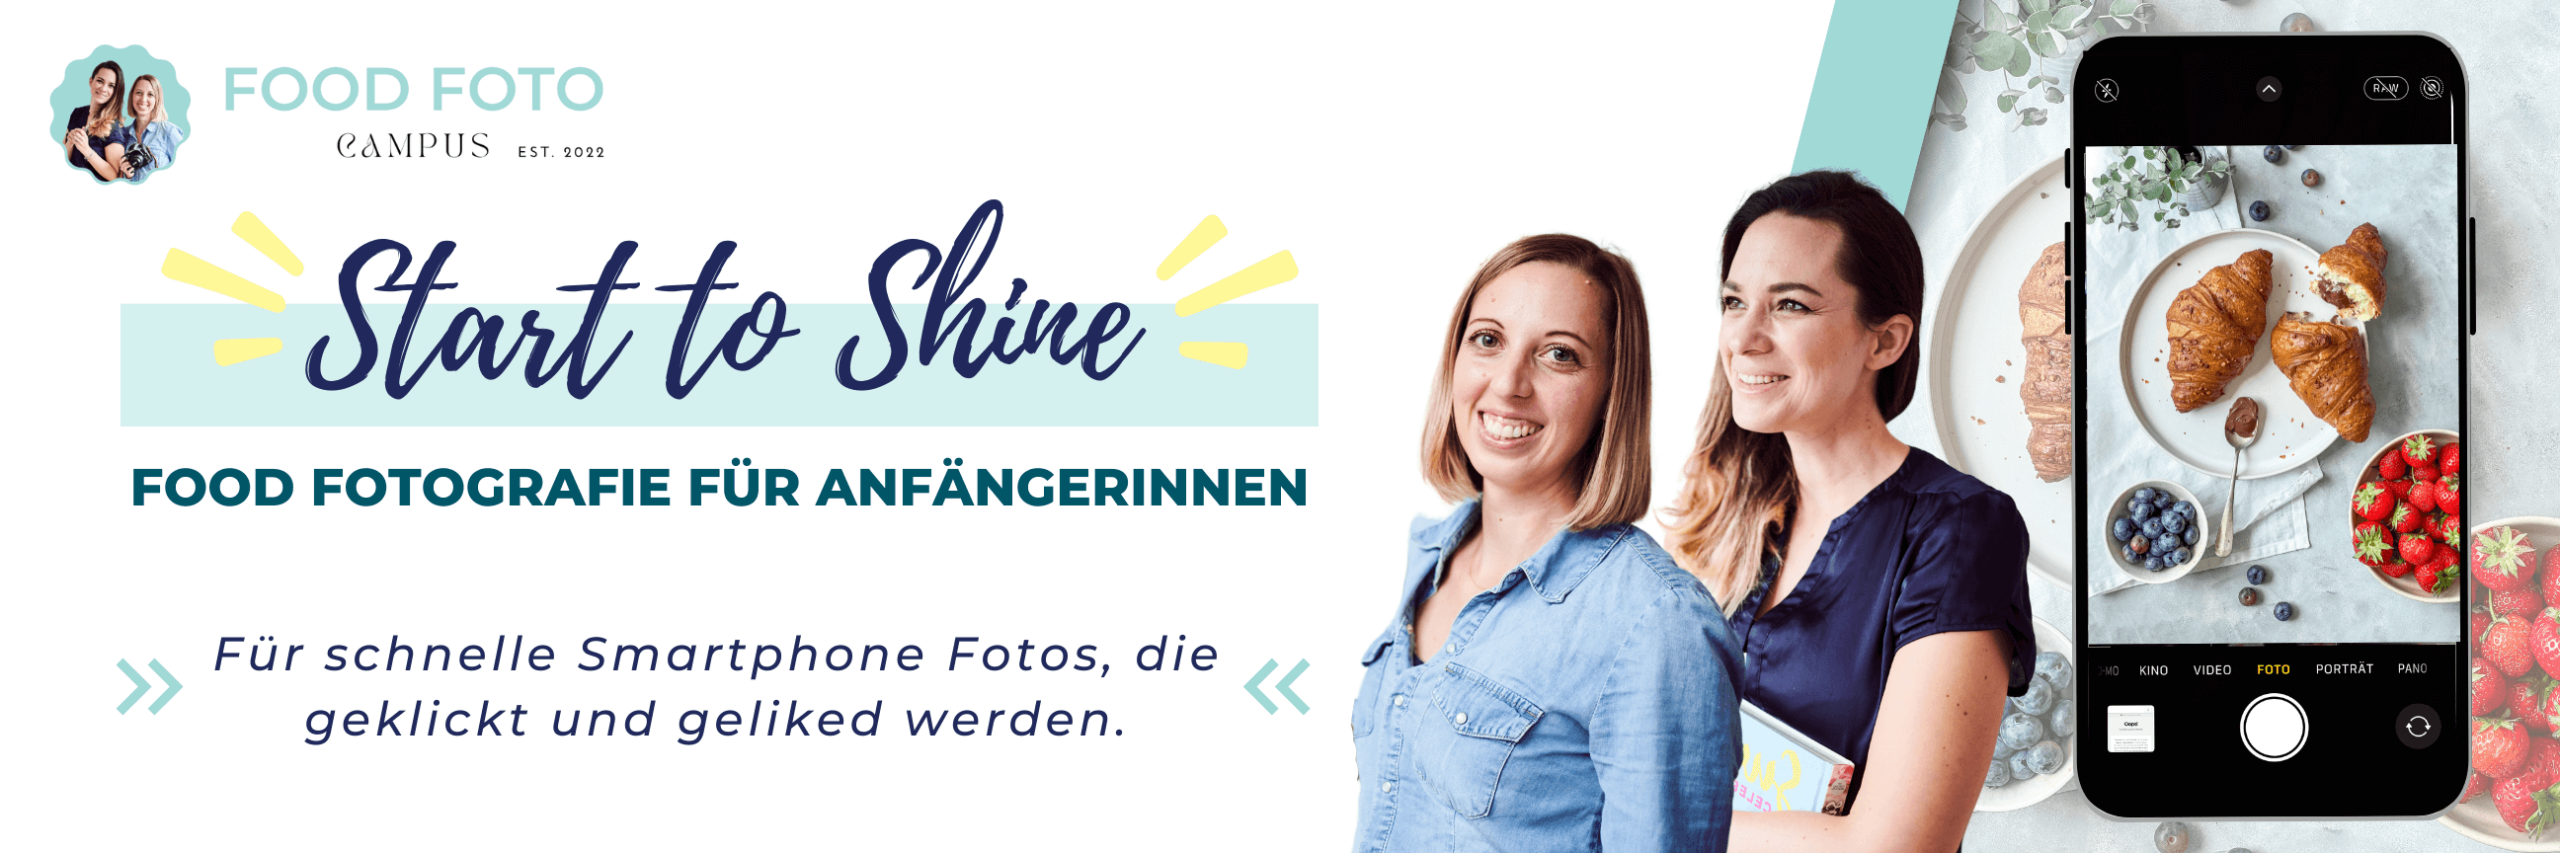 Start to Shine - Food Fotografie für Anfänger